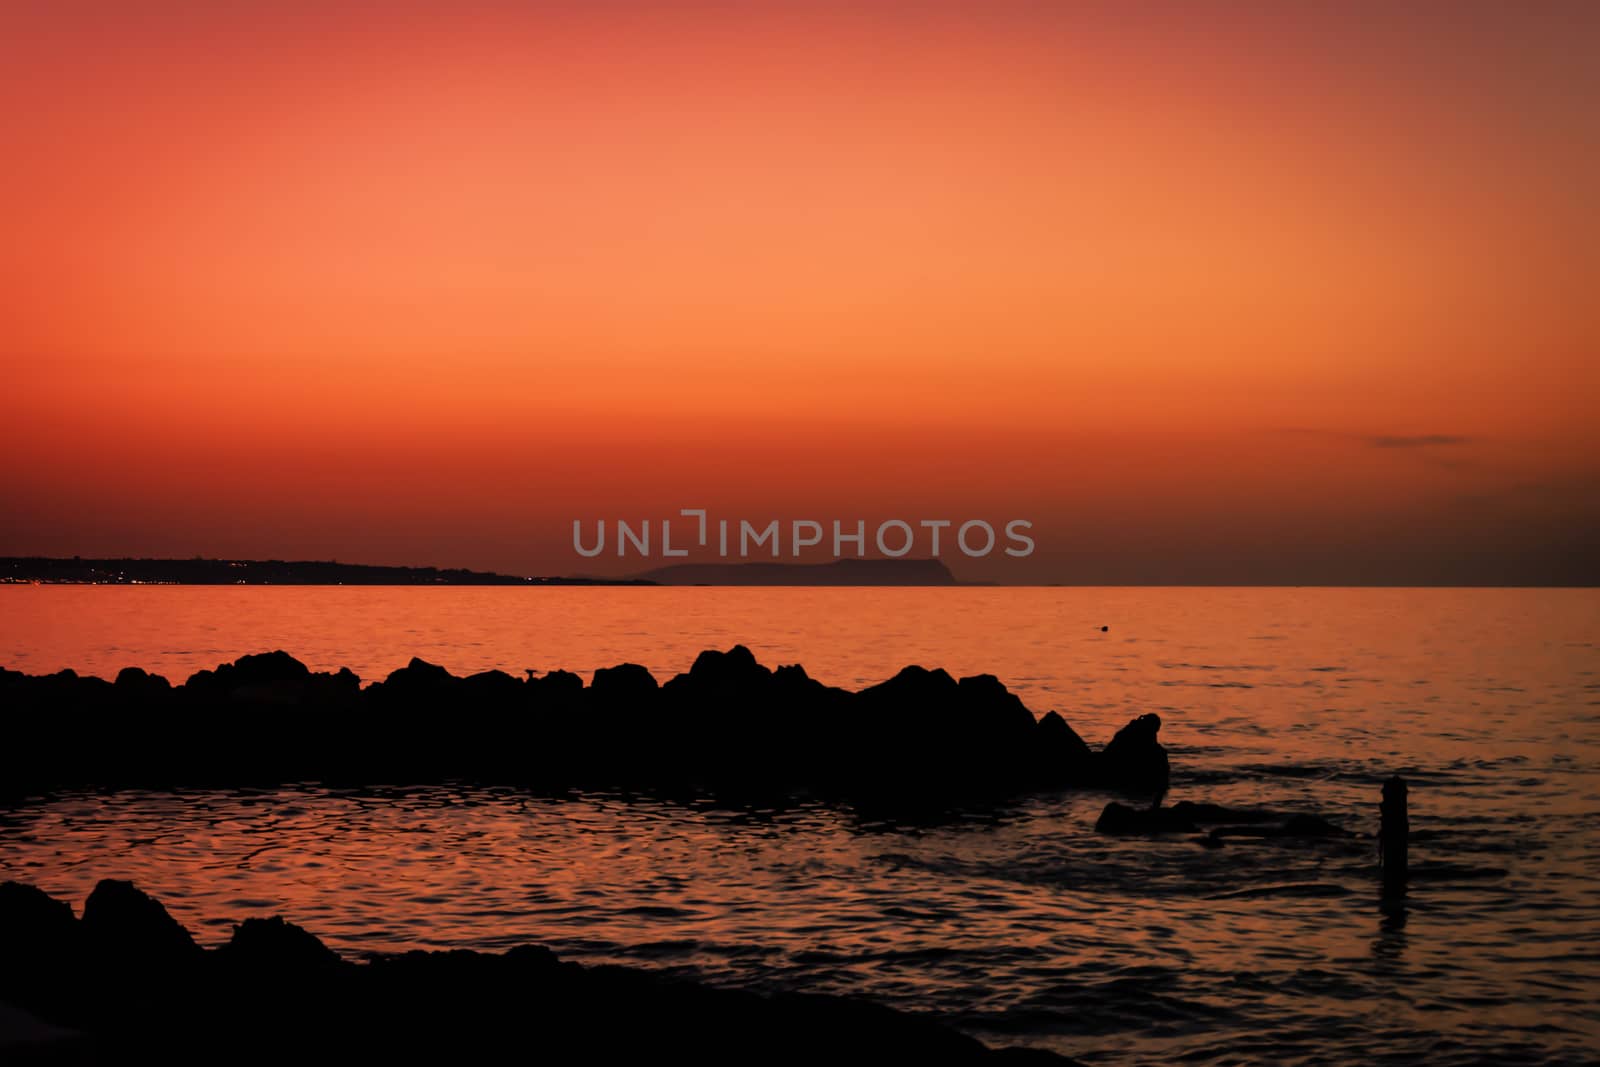 Skyline after sundown. Scenery of orange sky with rock silhouett by wektorygrafika